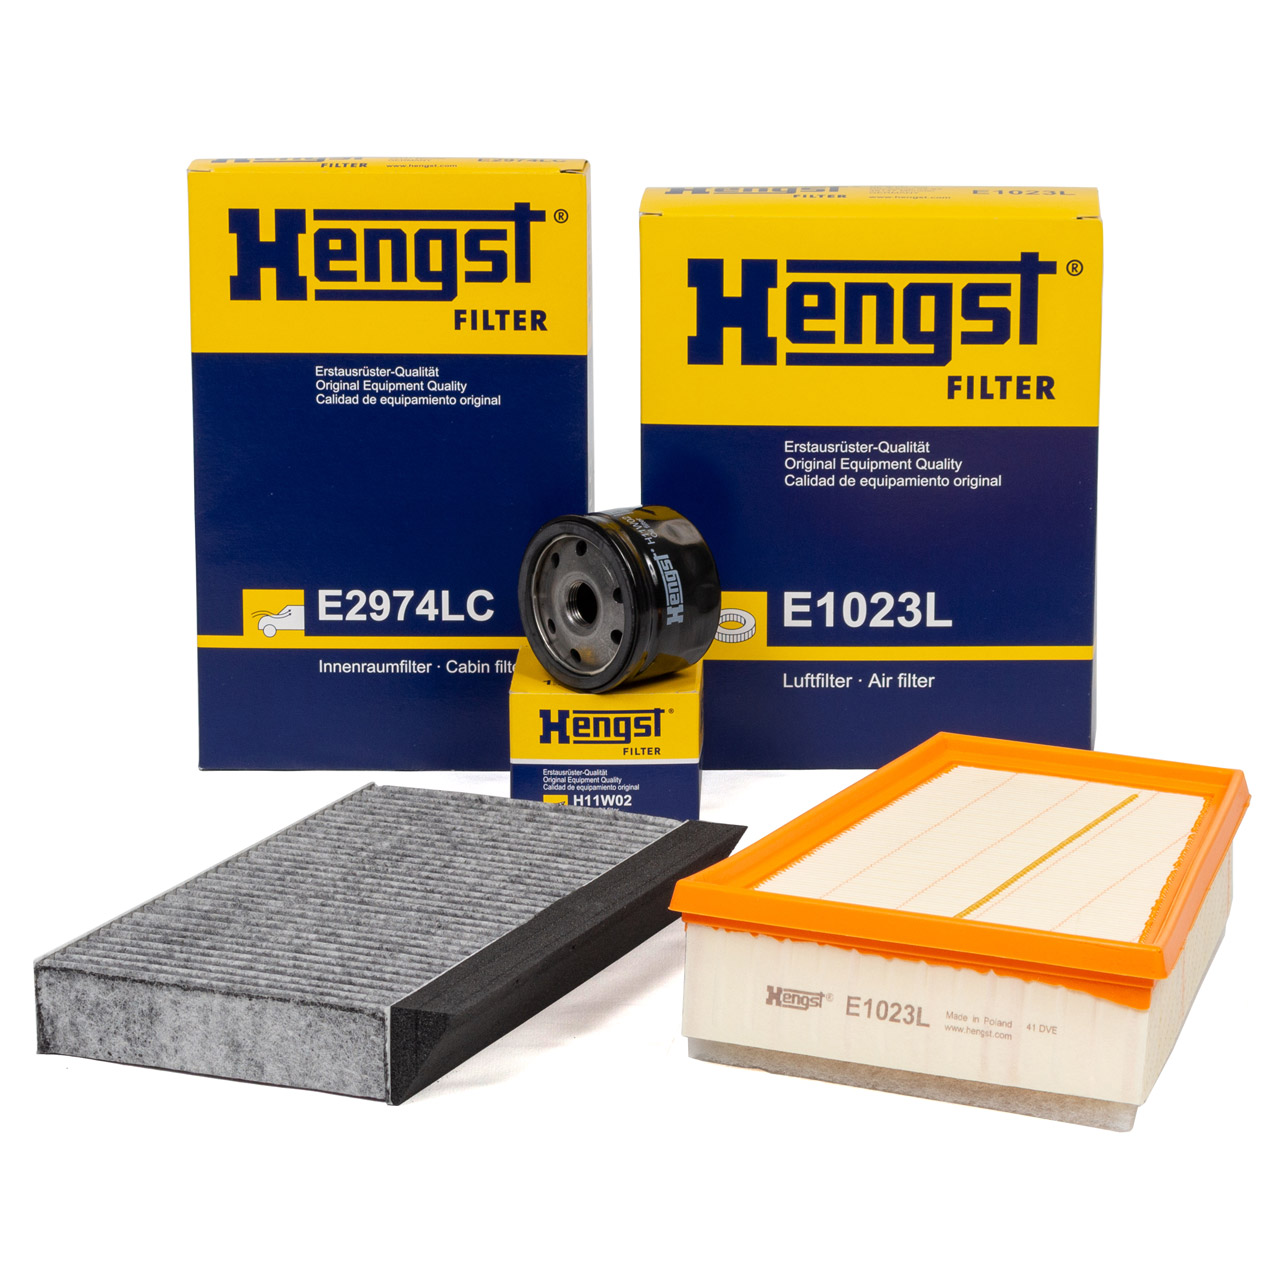 HENGST Filterset RENAULT Megane 3 Fluence Modus 1.6 16V 101-116 PS